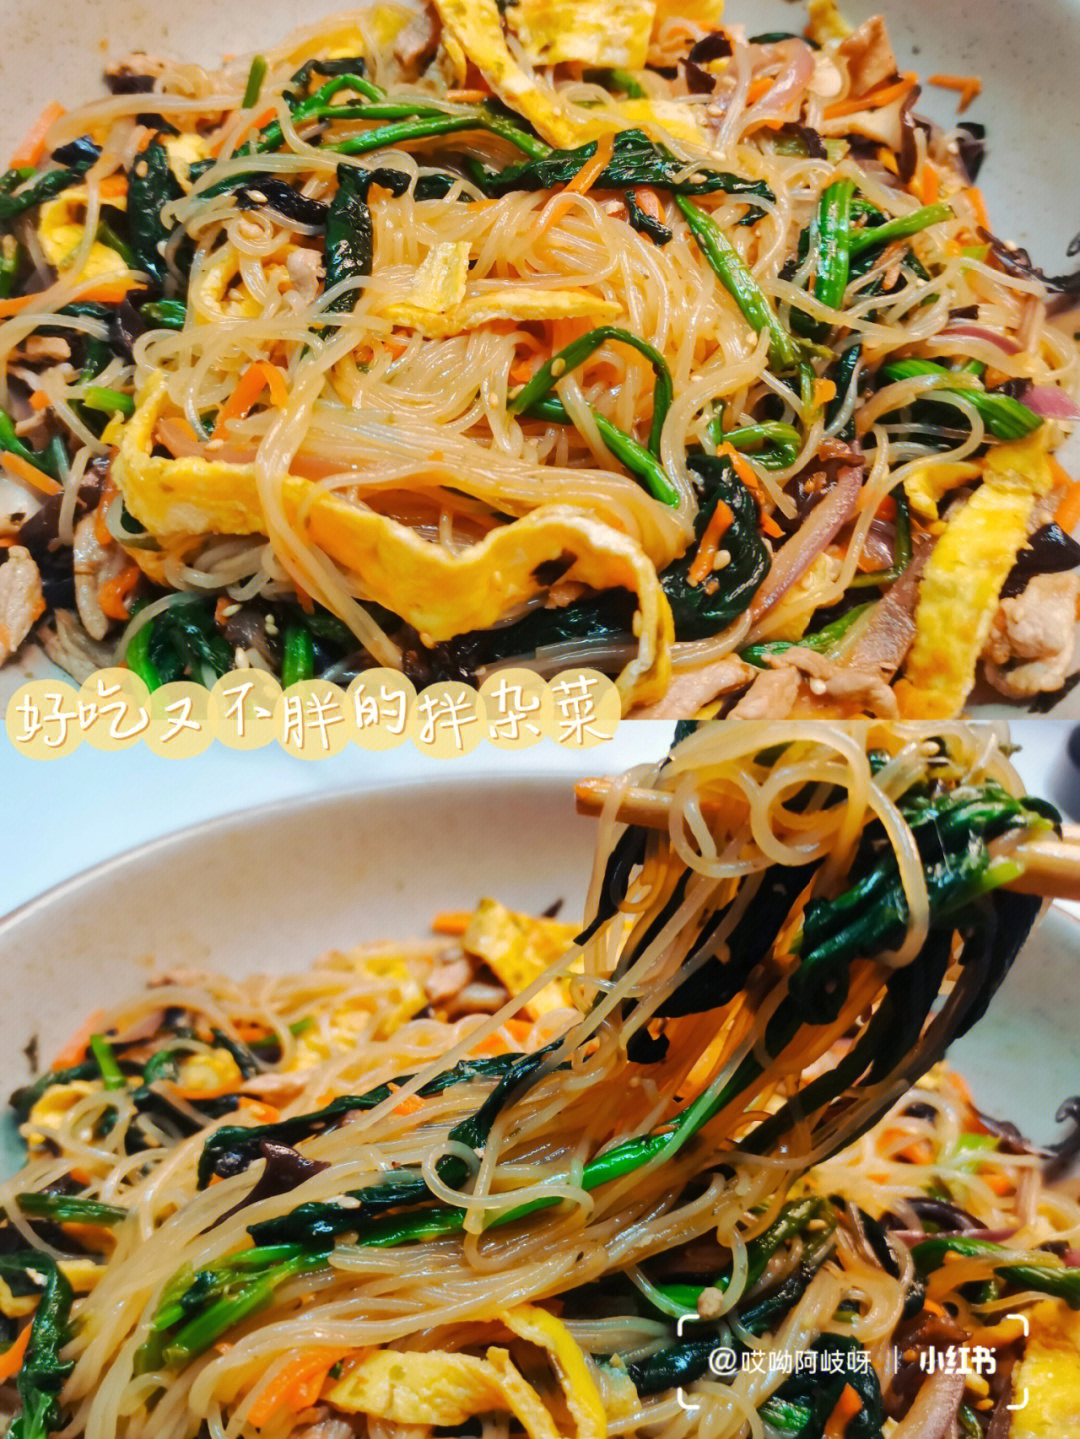 韩国杂菜的做法及图片图片